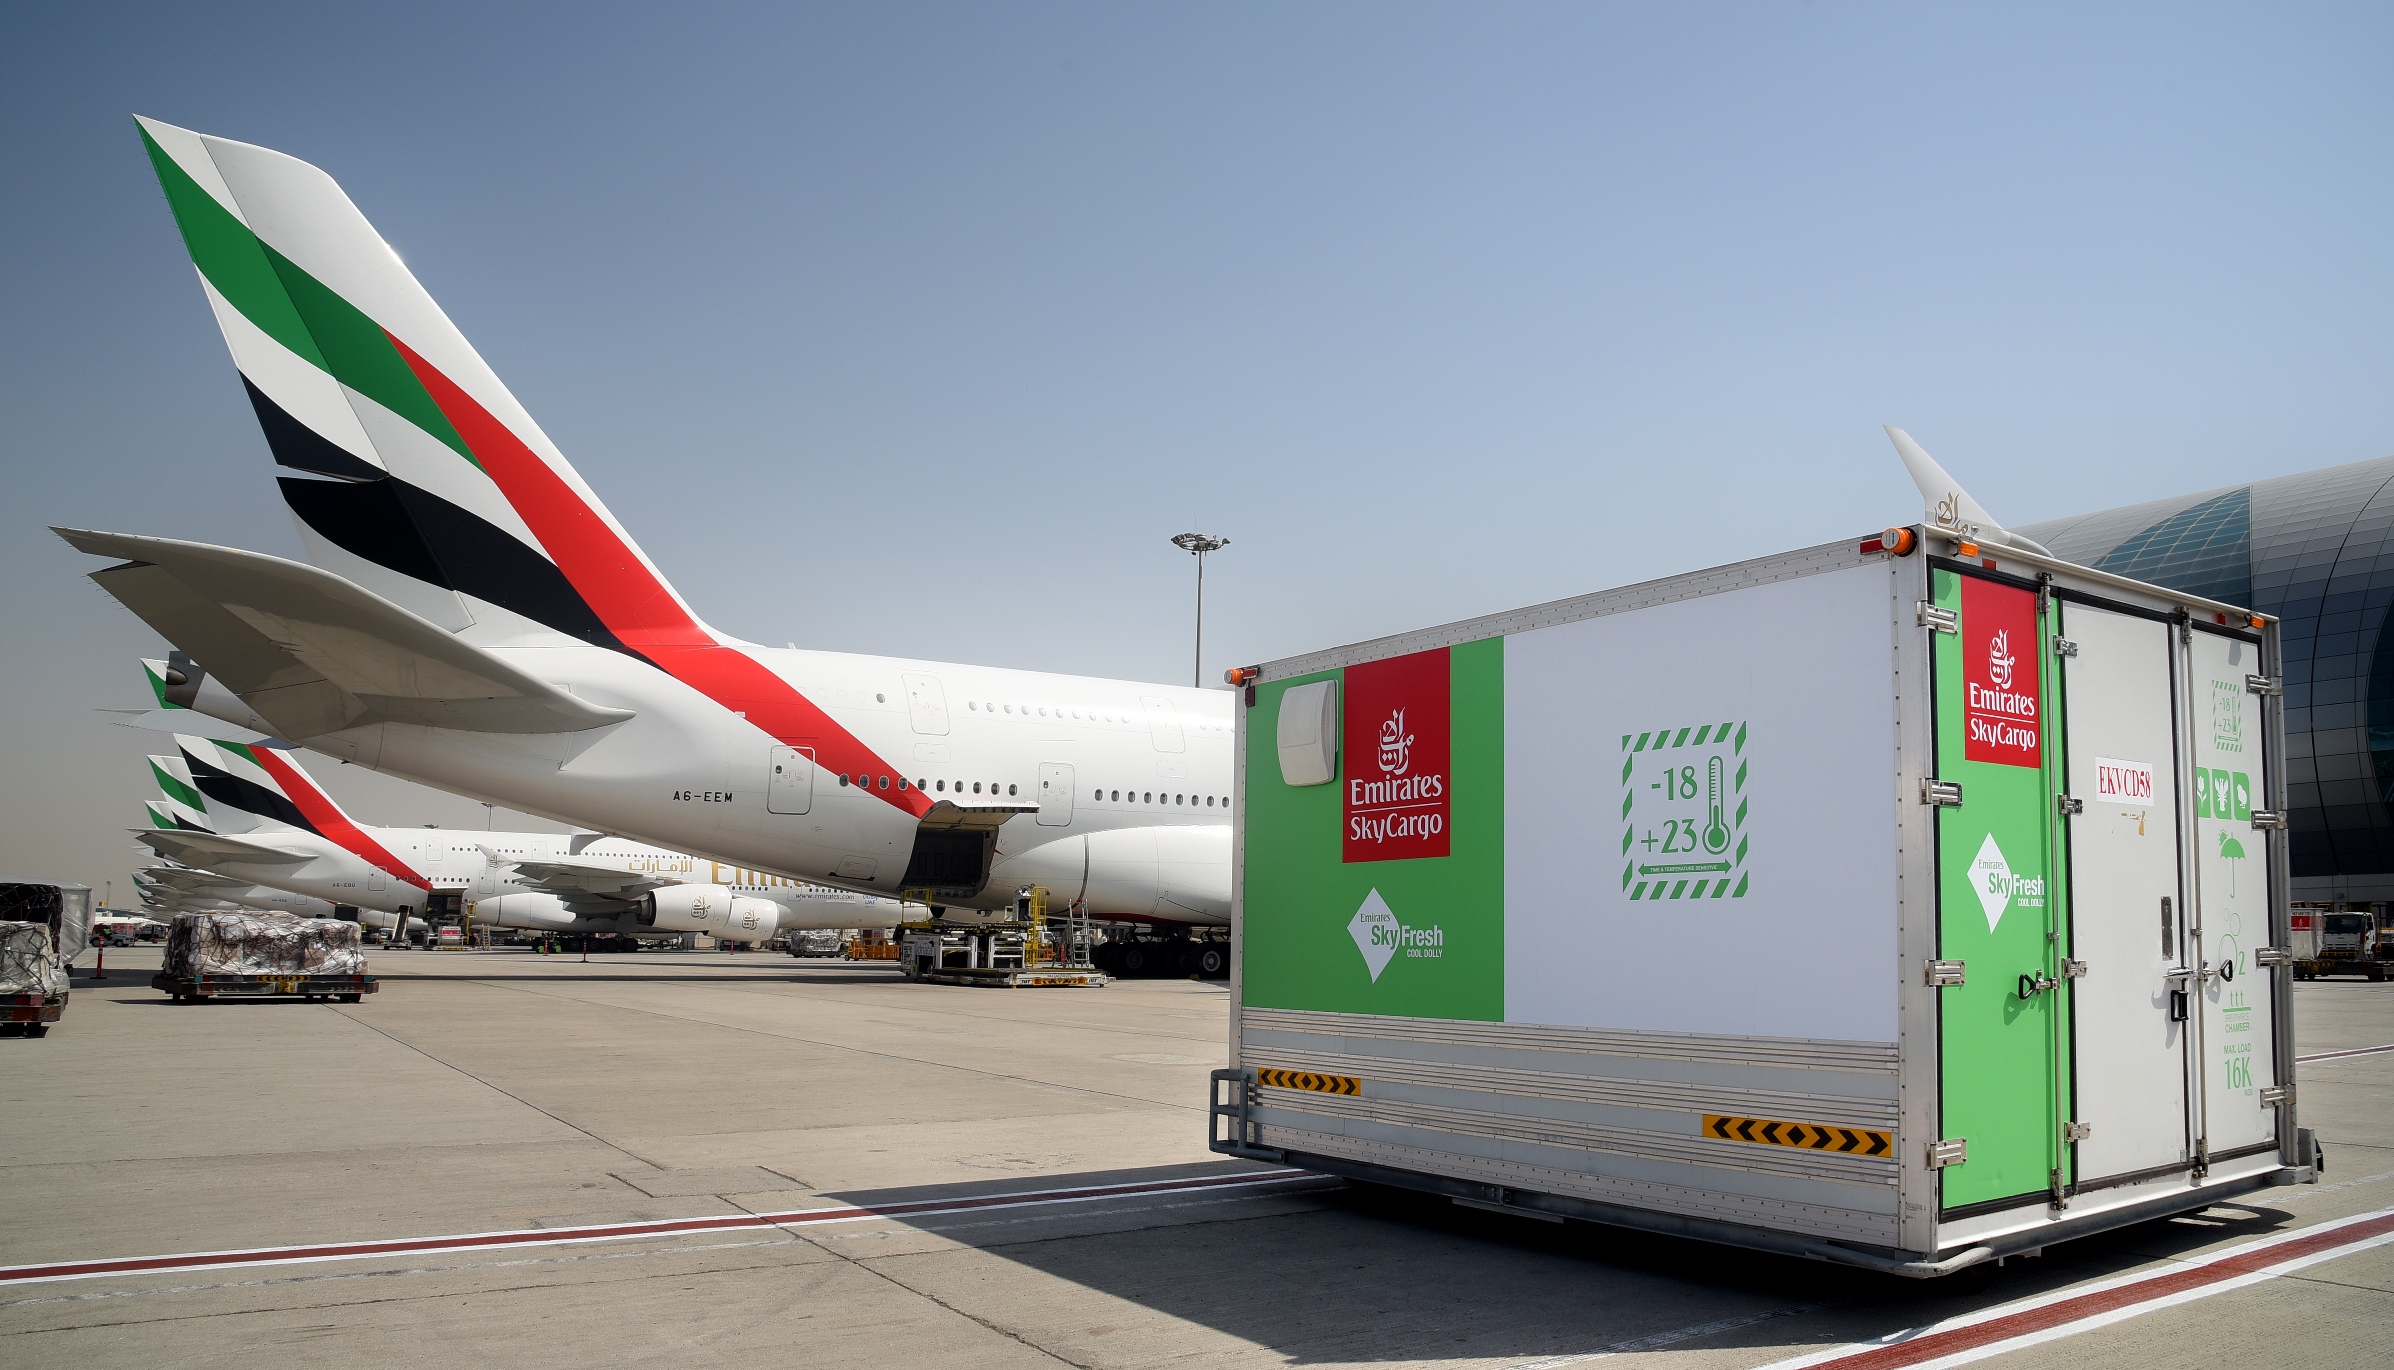 Emirates SkyFresh: New product range for perishables